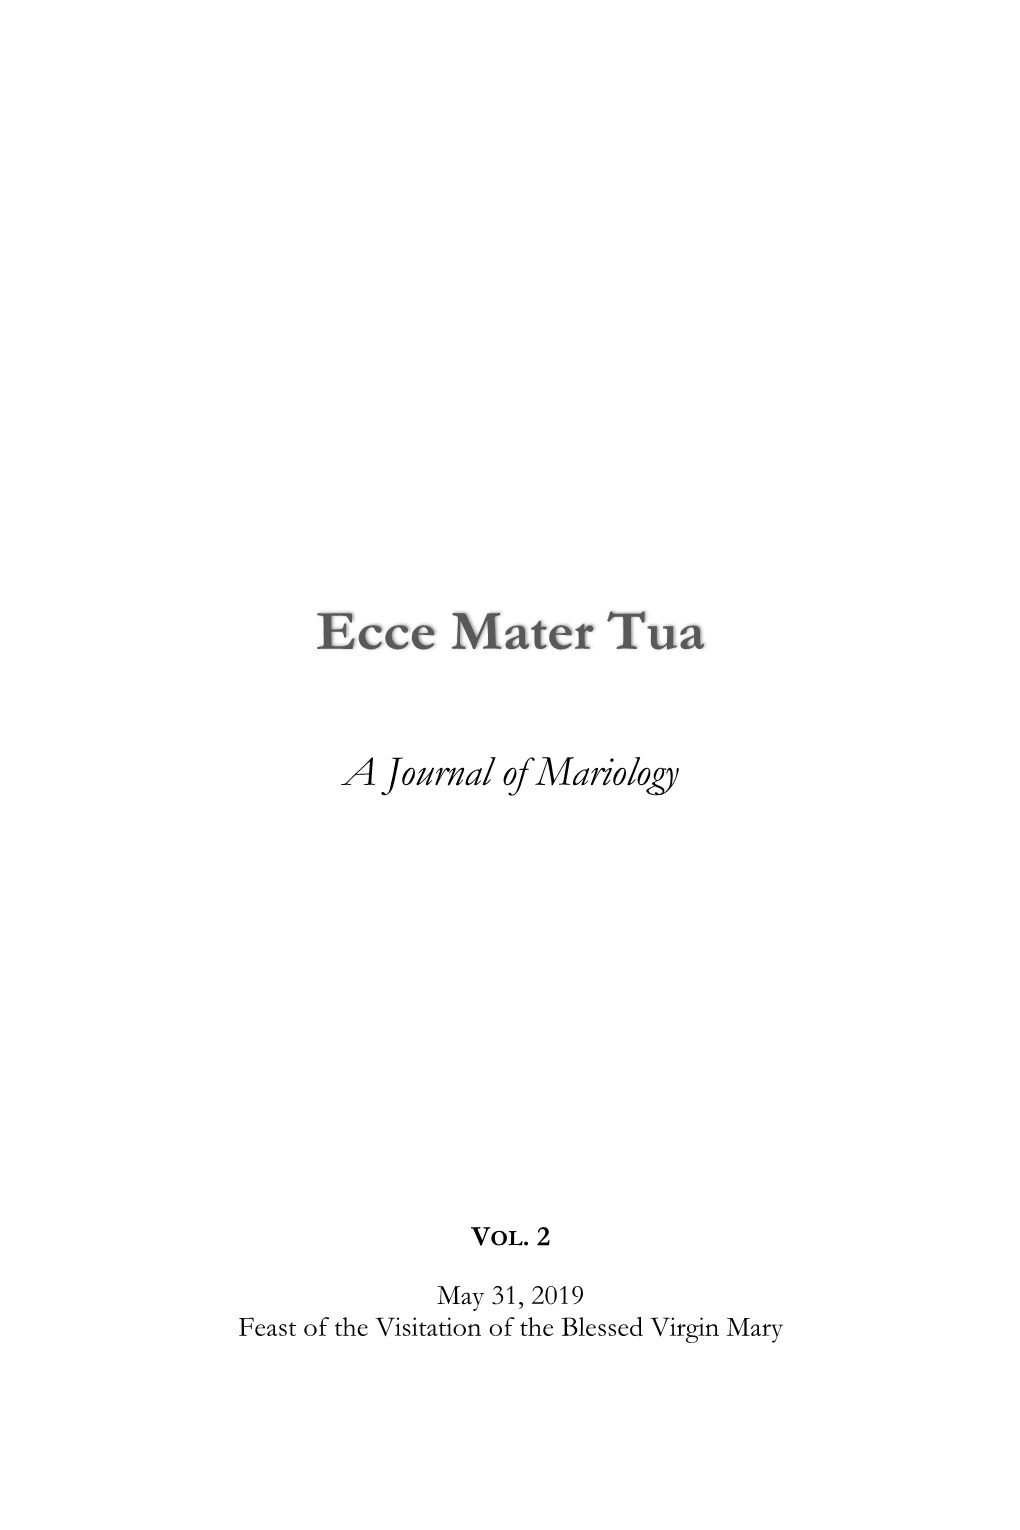 Ecce Mater Tua Vol. 2